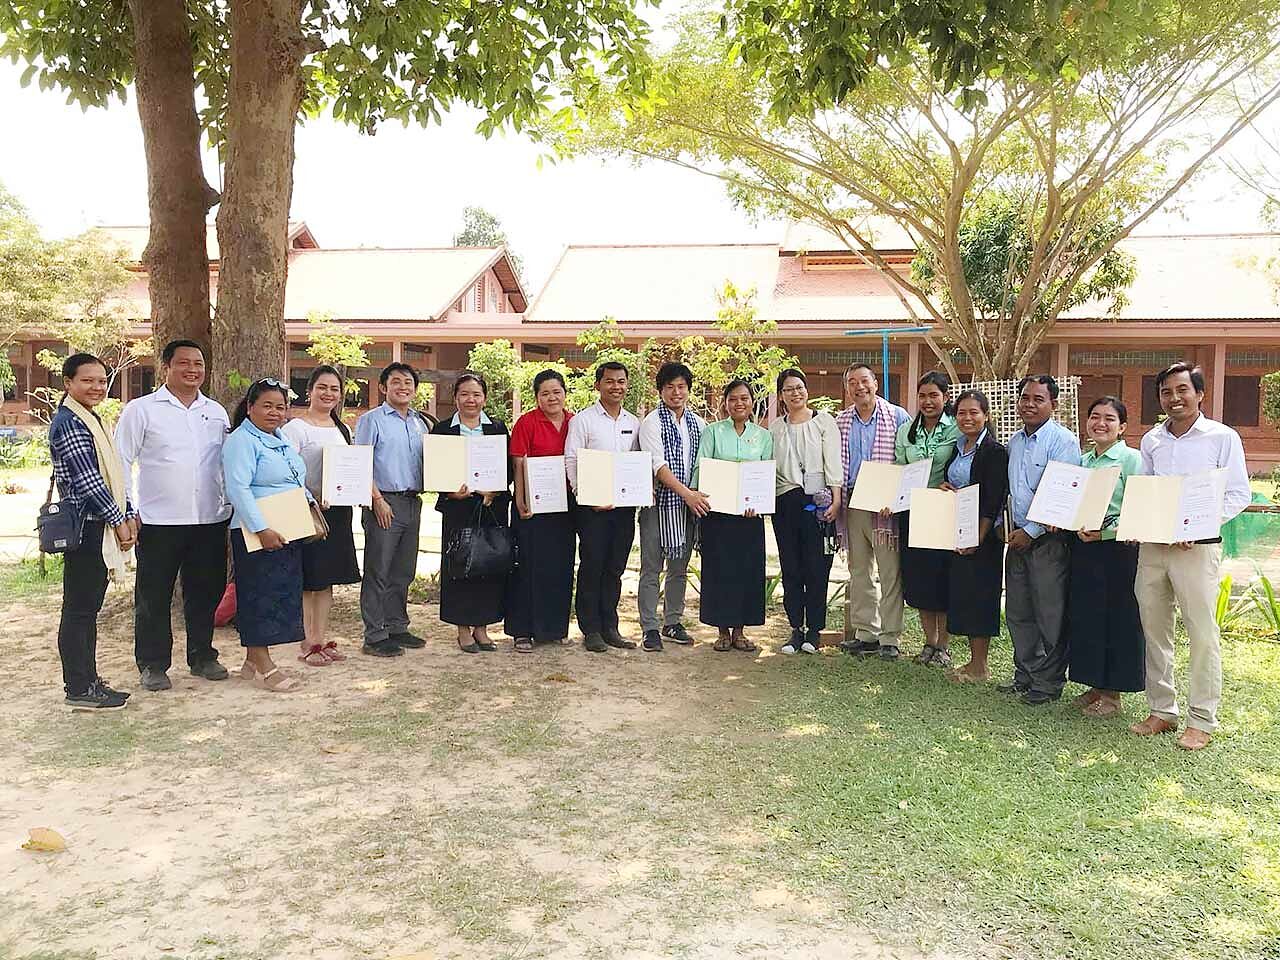 修了証書を持つカンボジアの方たちの画像